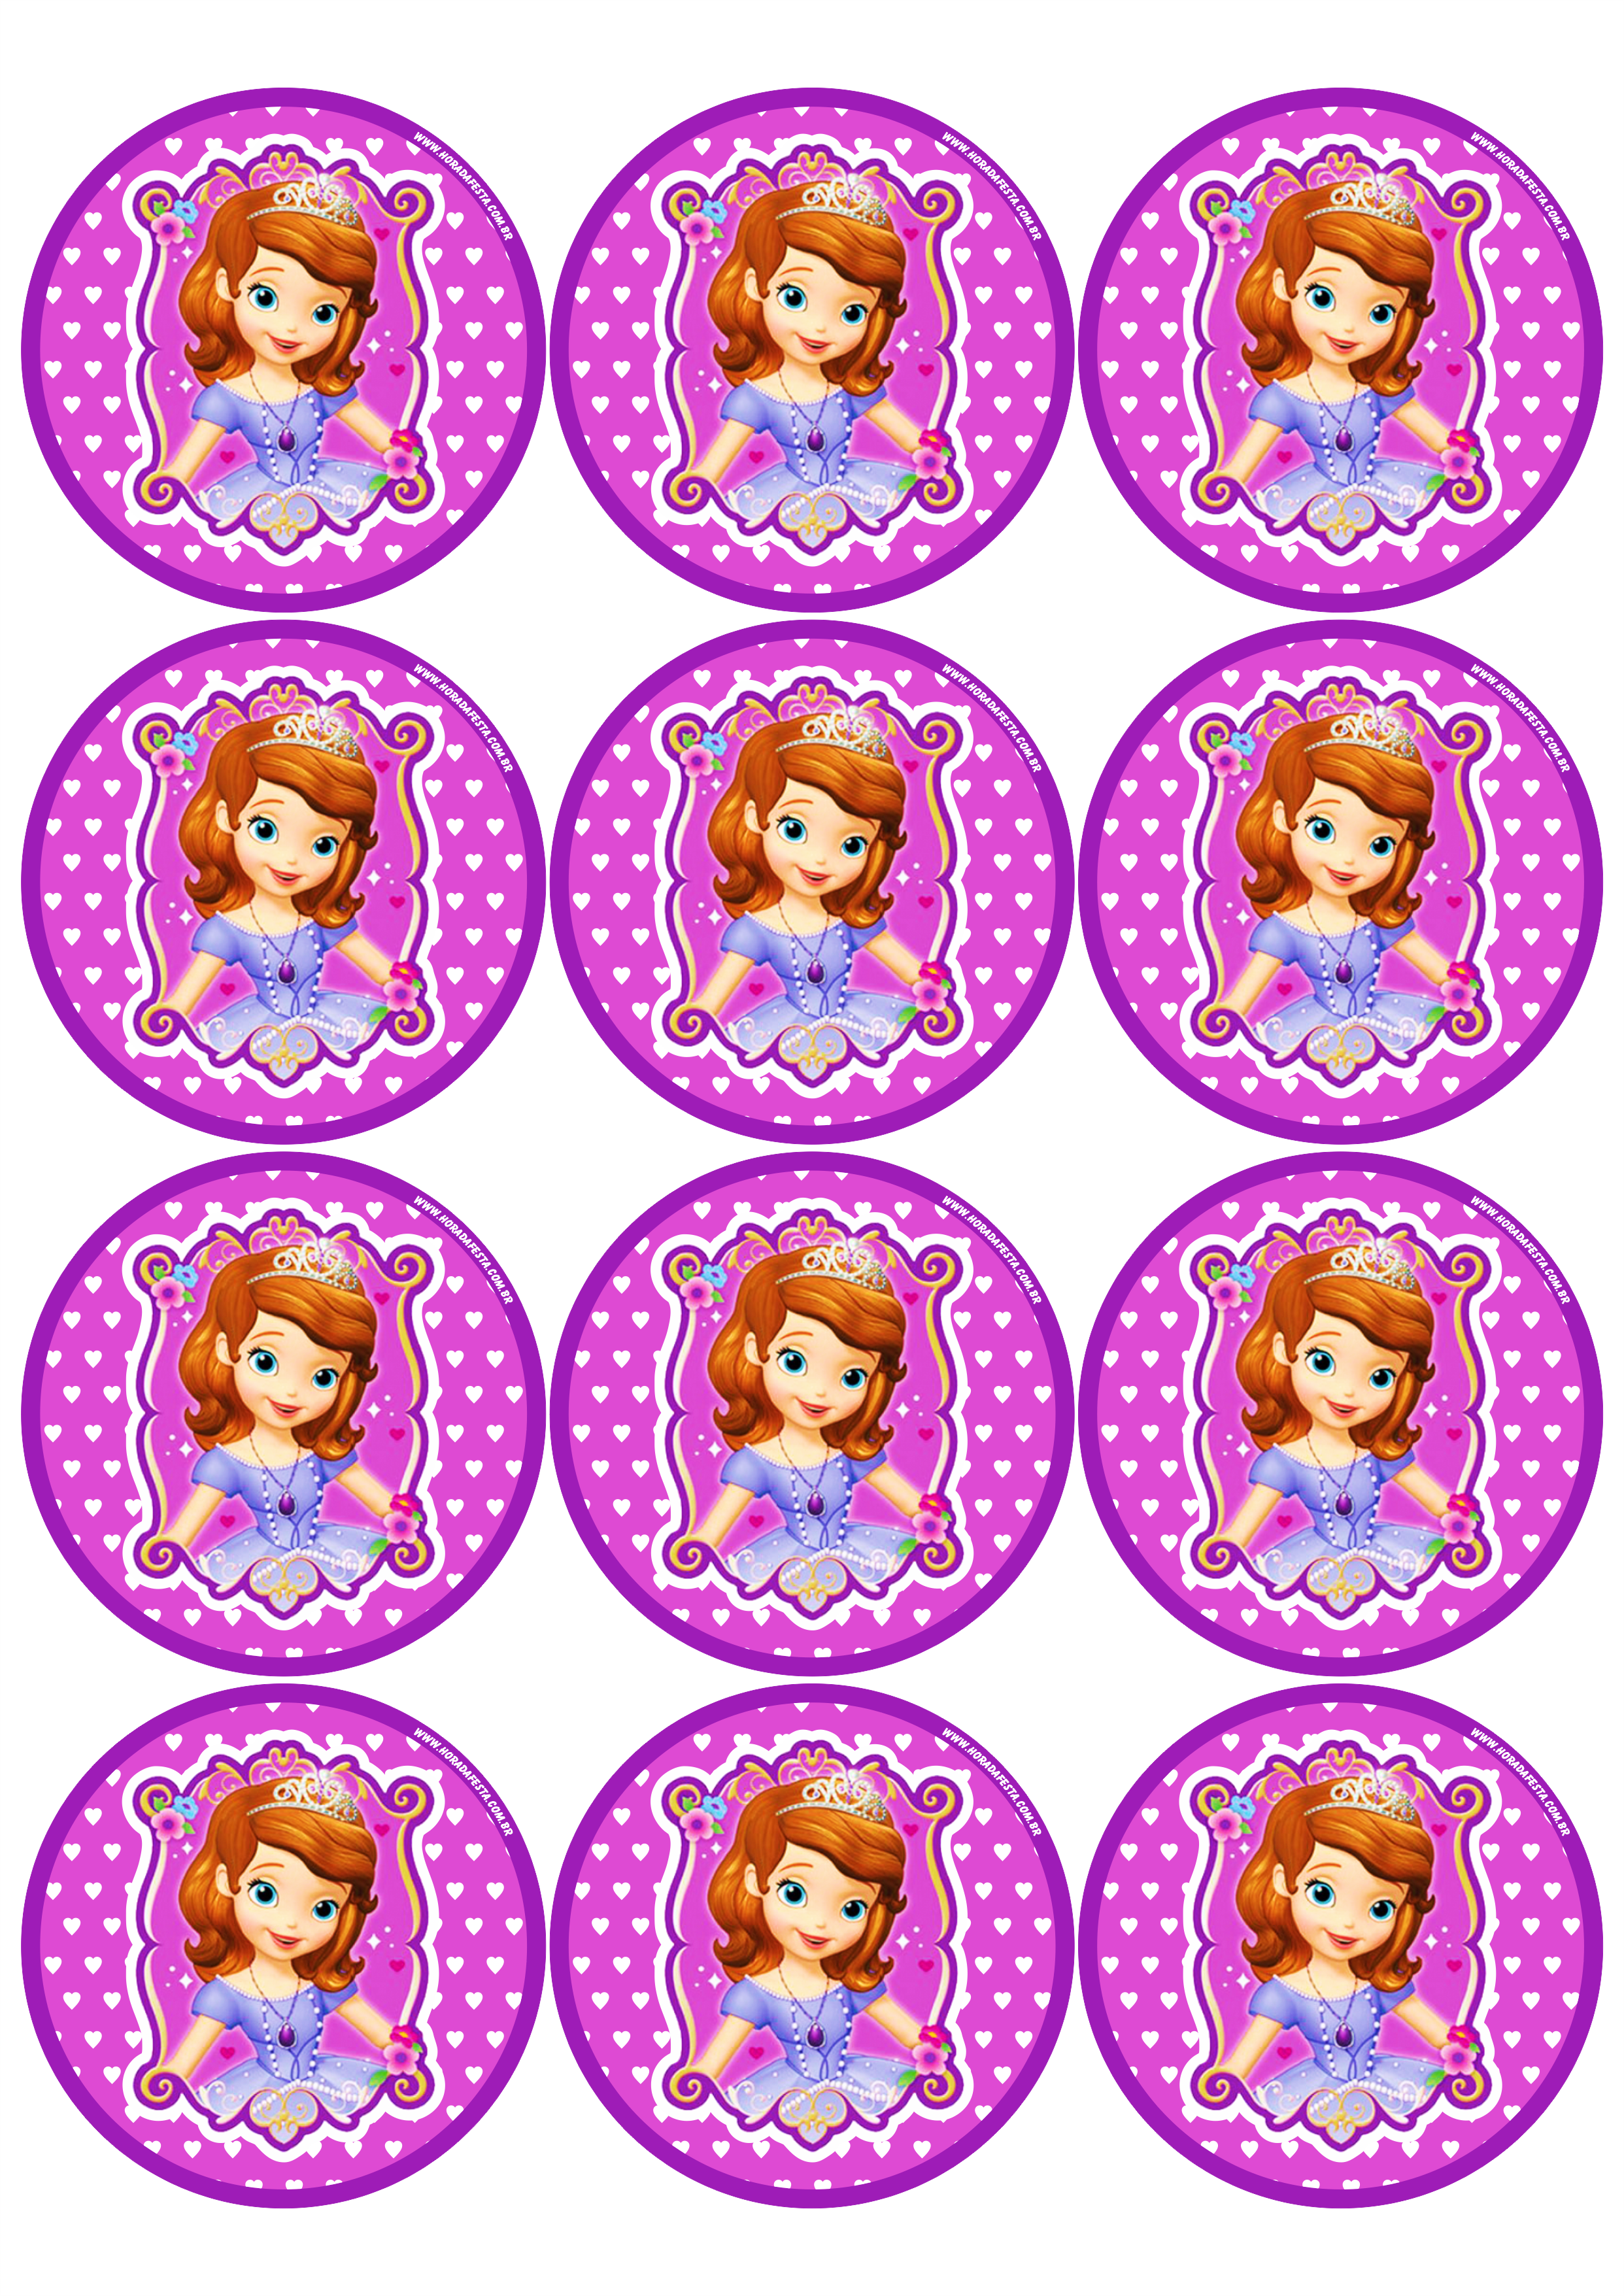 Princesa Sofia adesivo redondo tag sticker painel festa de aniversário infantil menina 12 imagens png